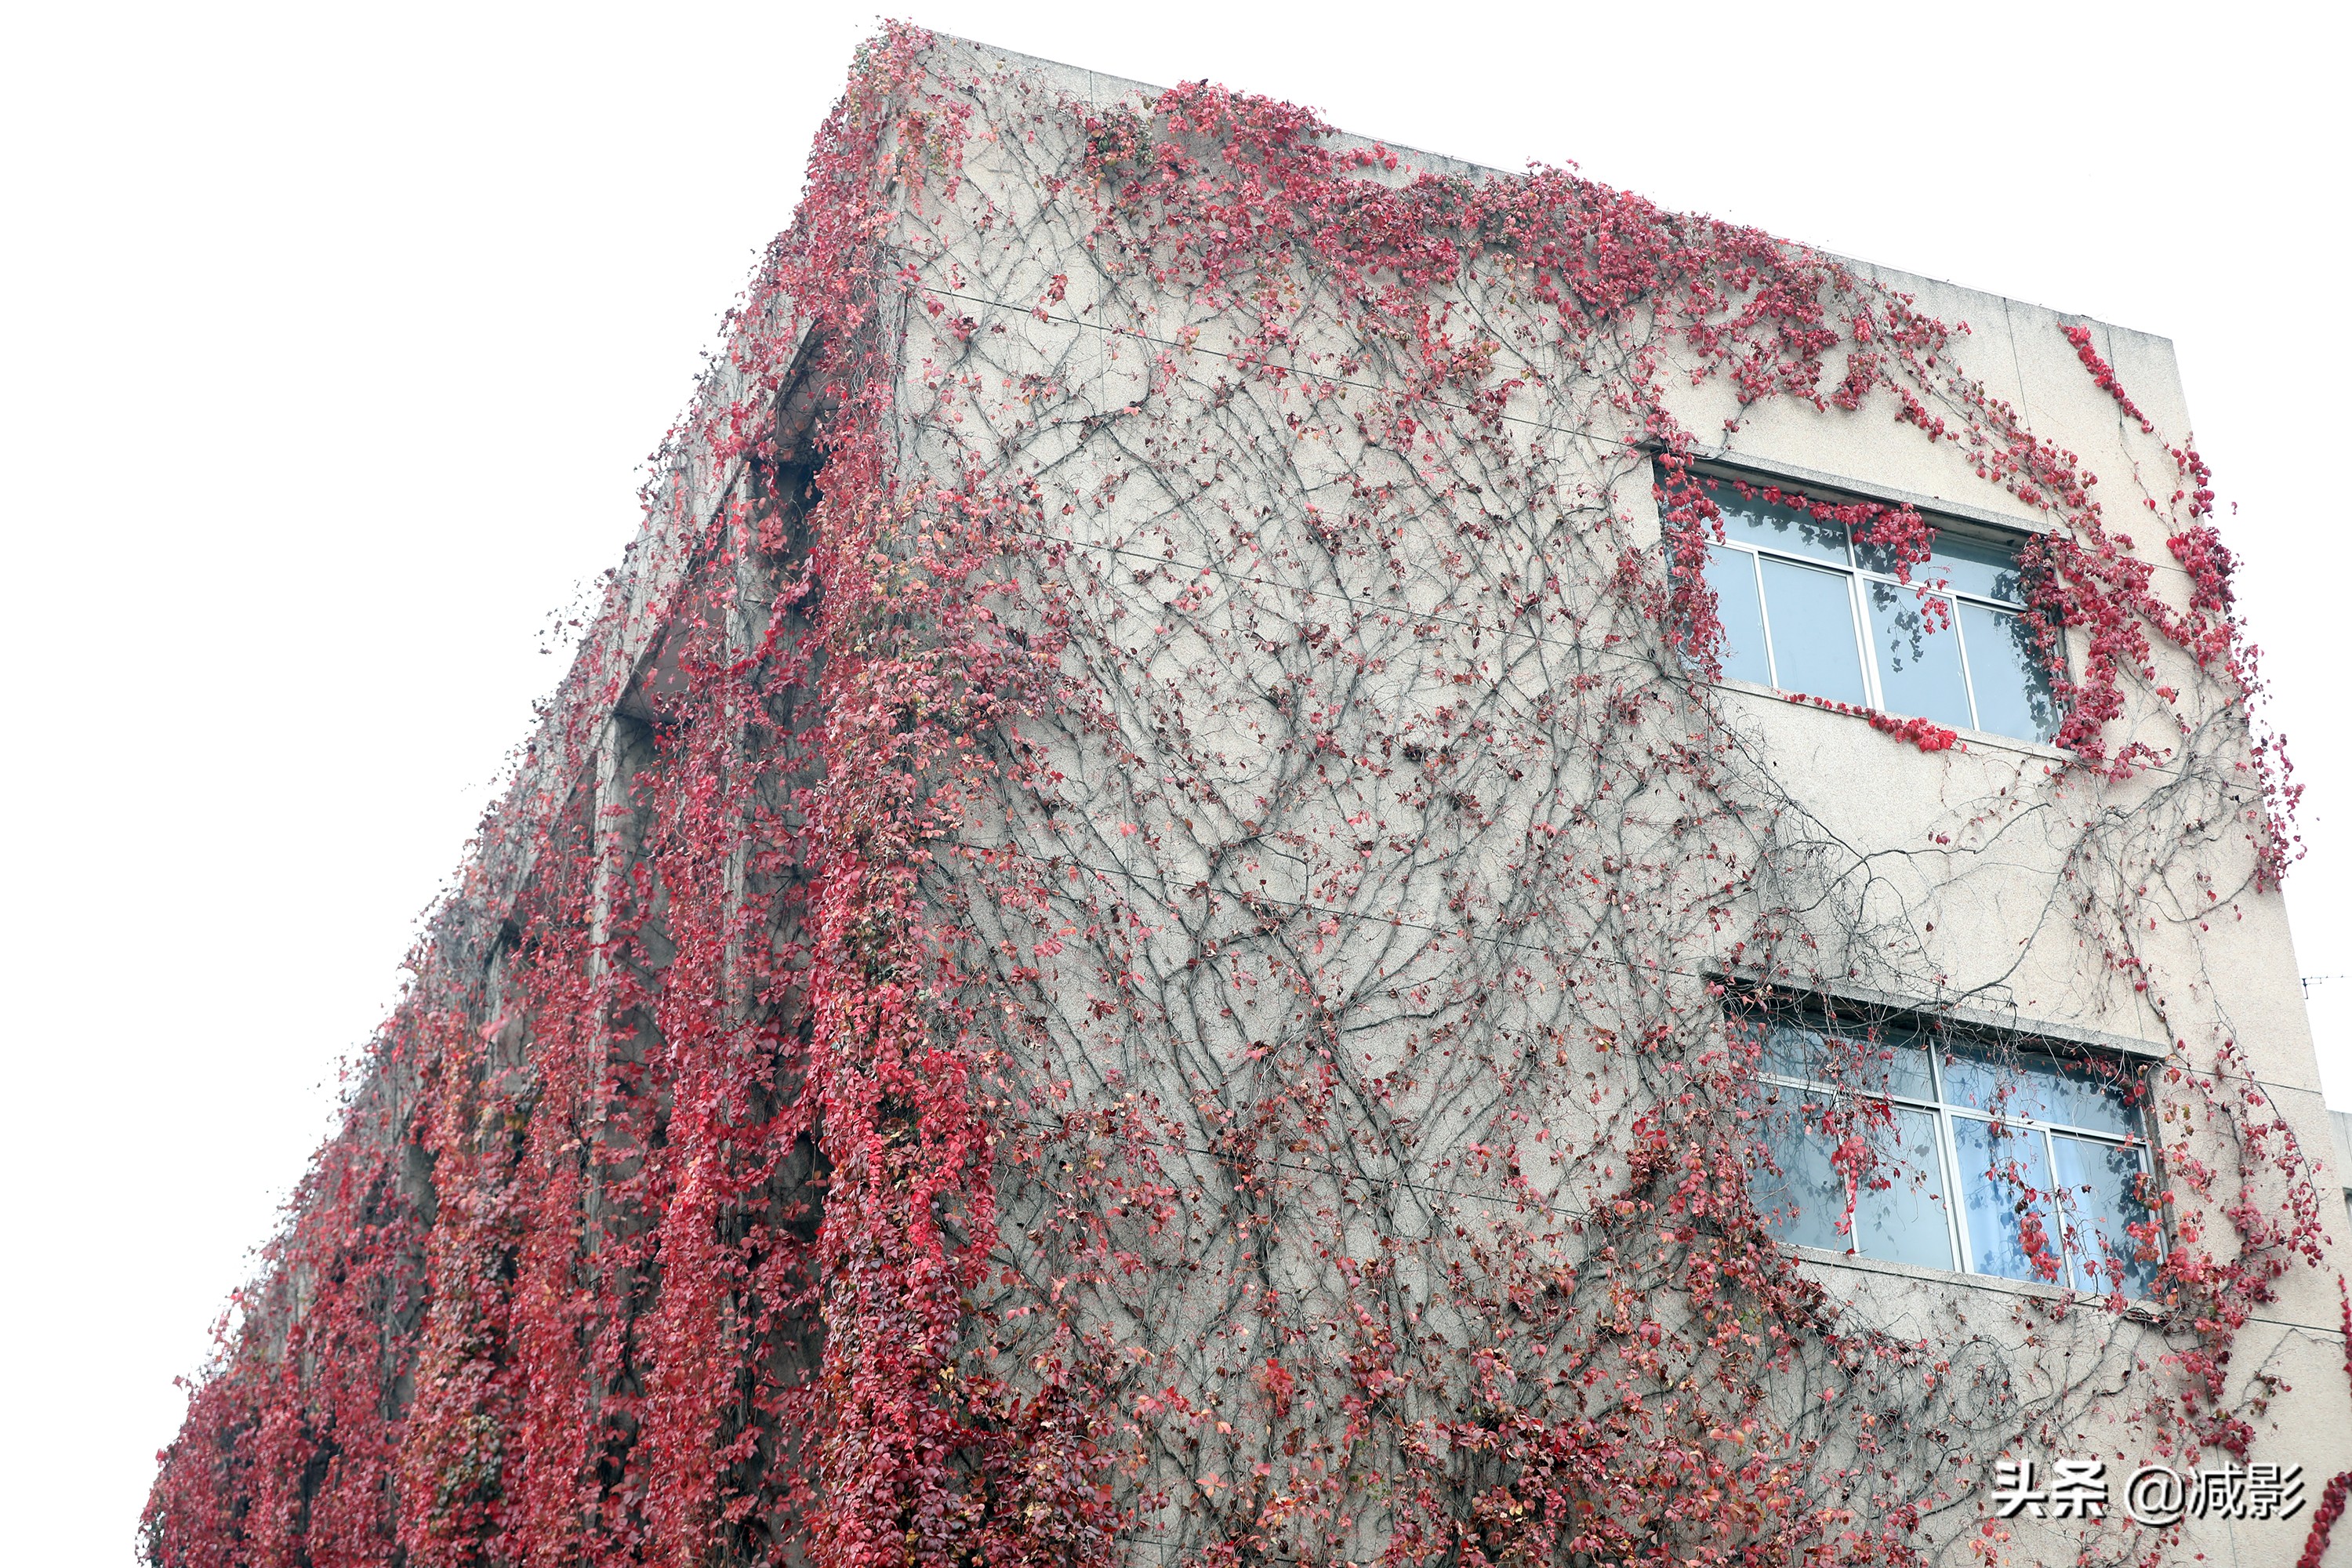 高校教学楼30年爬满爬山虎，被秋天渲染成片红，学生不知学校美